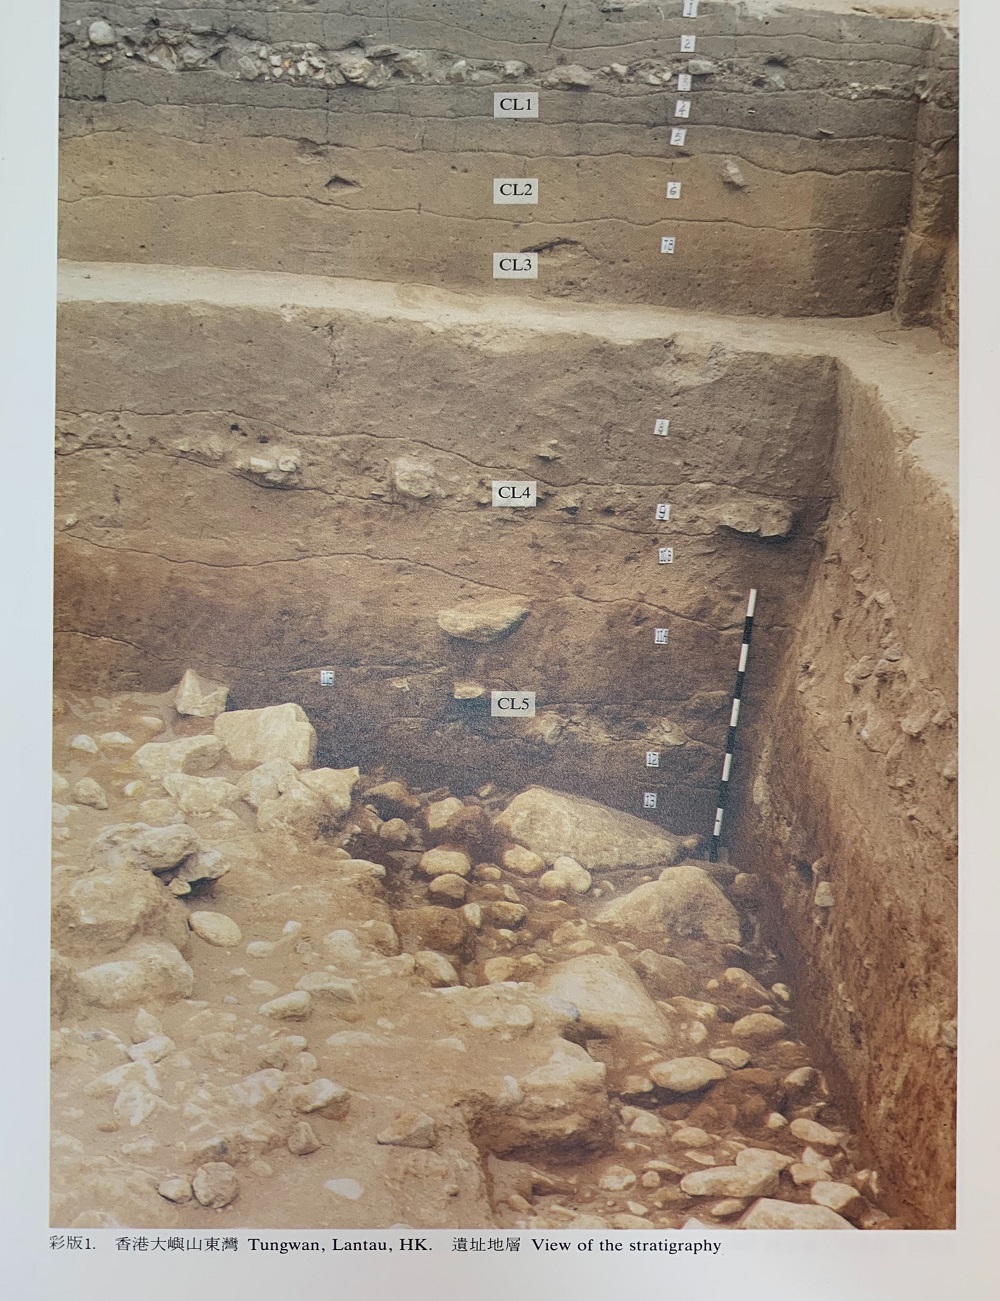 尋找澳門考古遺址的年代